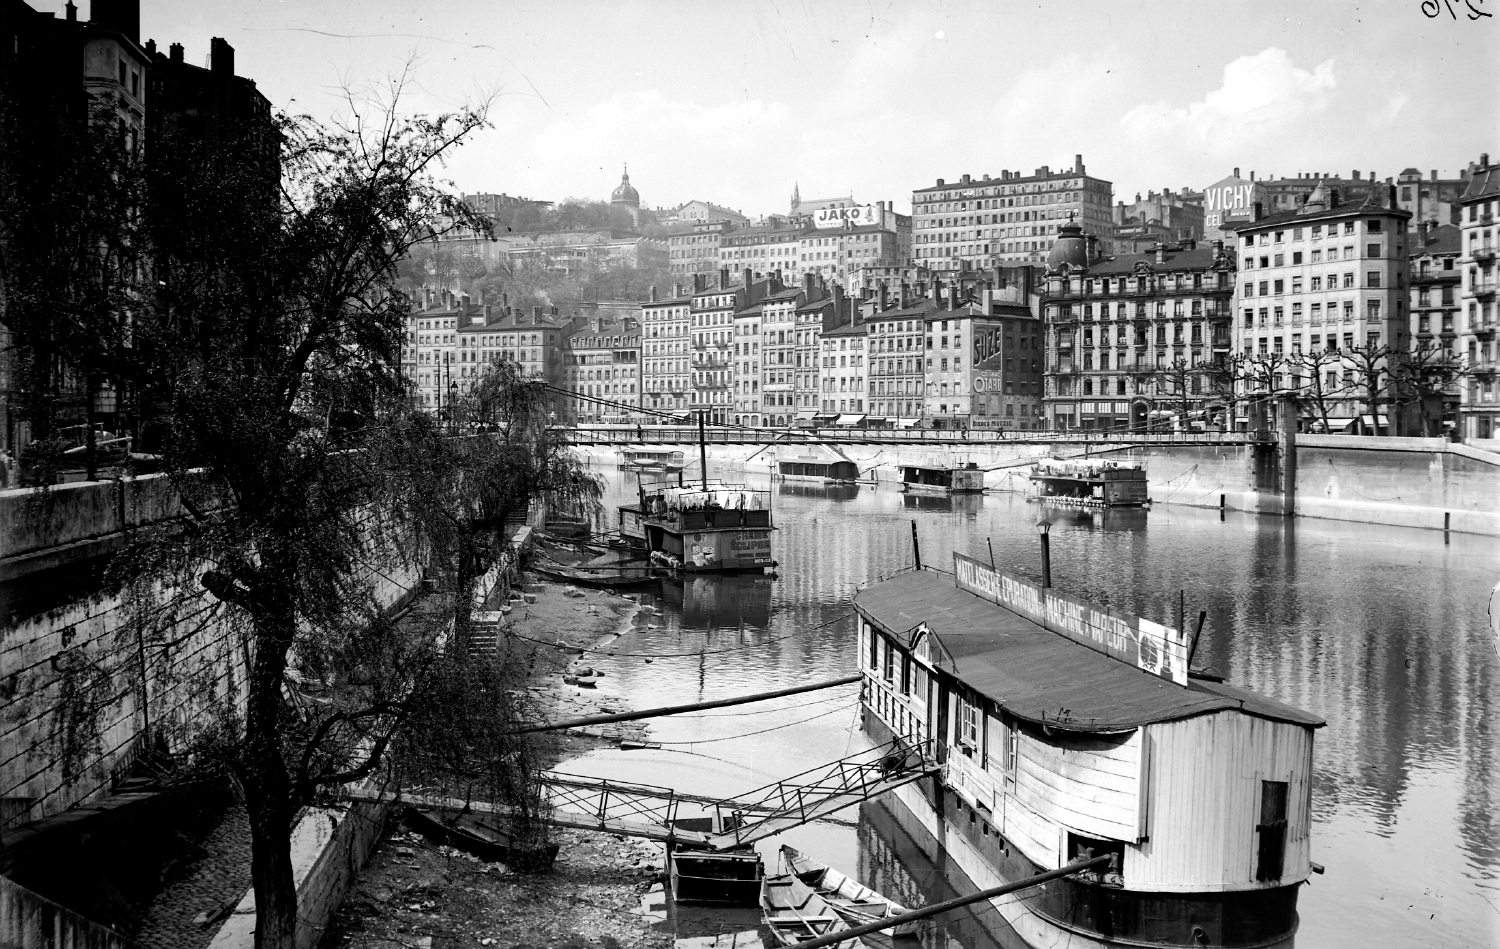 Plattes sur les berges de la Saône quai de Bondy : tirage photographique noir et blanc (sans date, cote 8PH 547)